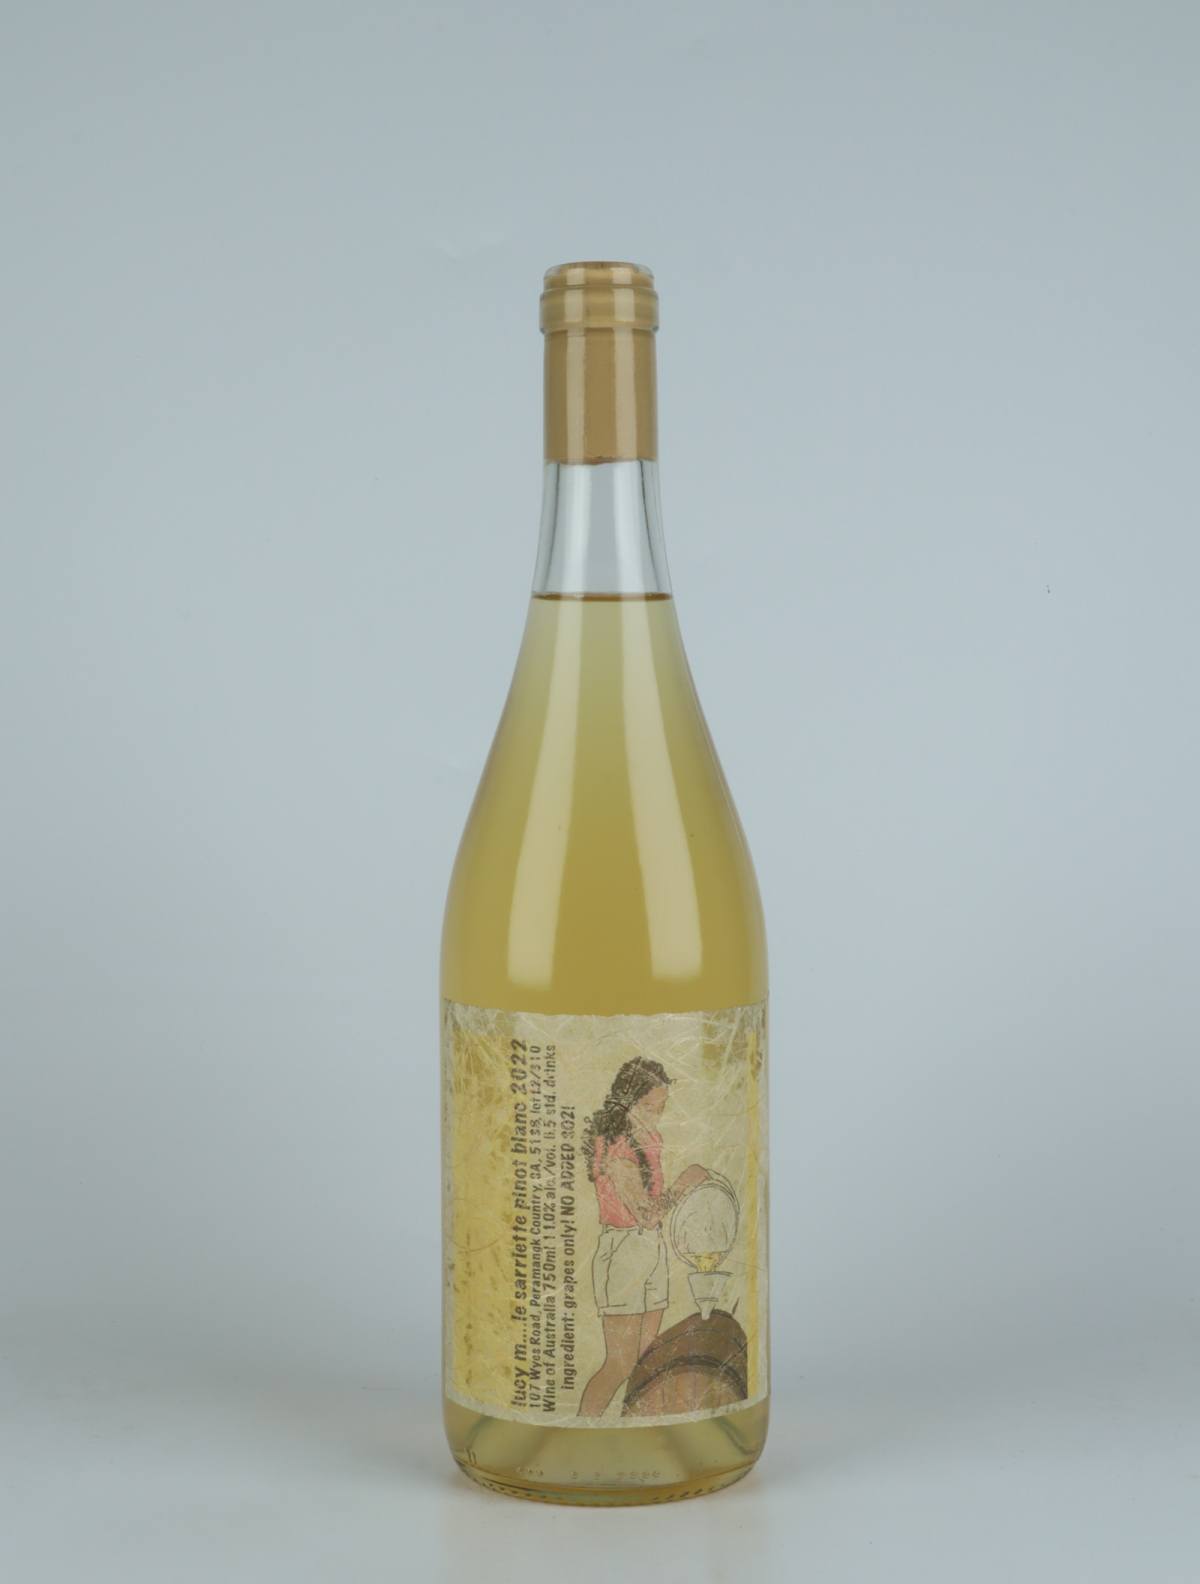 En flaske 2022 Le Sarriette Pinot Blanc Hvidvin fra Lucy Margaux, Adelaide Hills i Australien